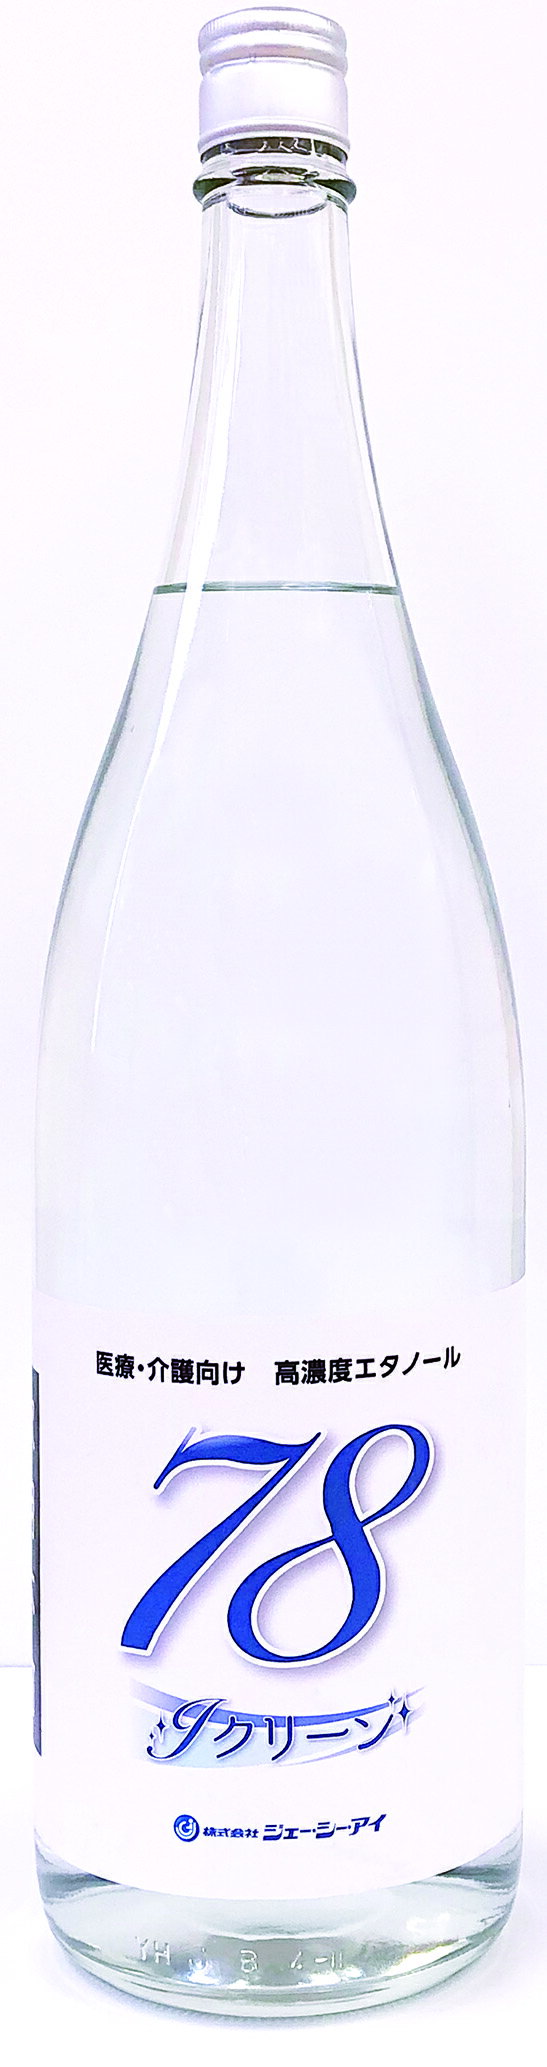 【高濃度エタノール】Jクリーン78 瓶タイプ【ケース販売】1.8L×6本【送料無料】【寒梅酒造×ジェー・シー・アイ】